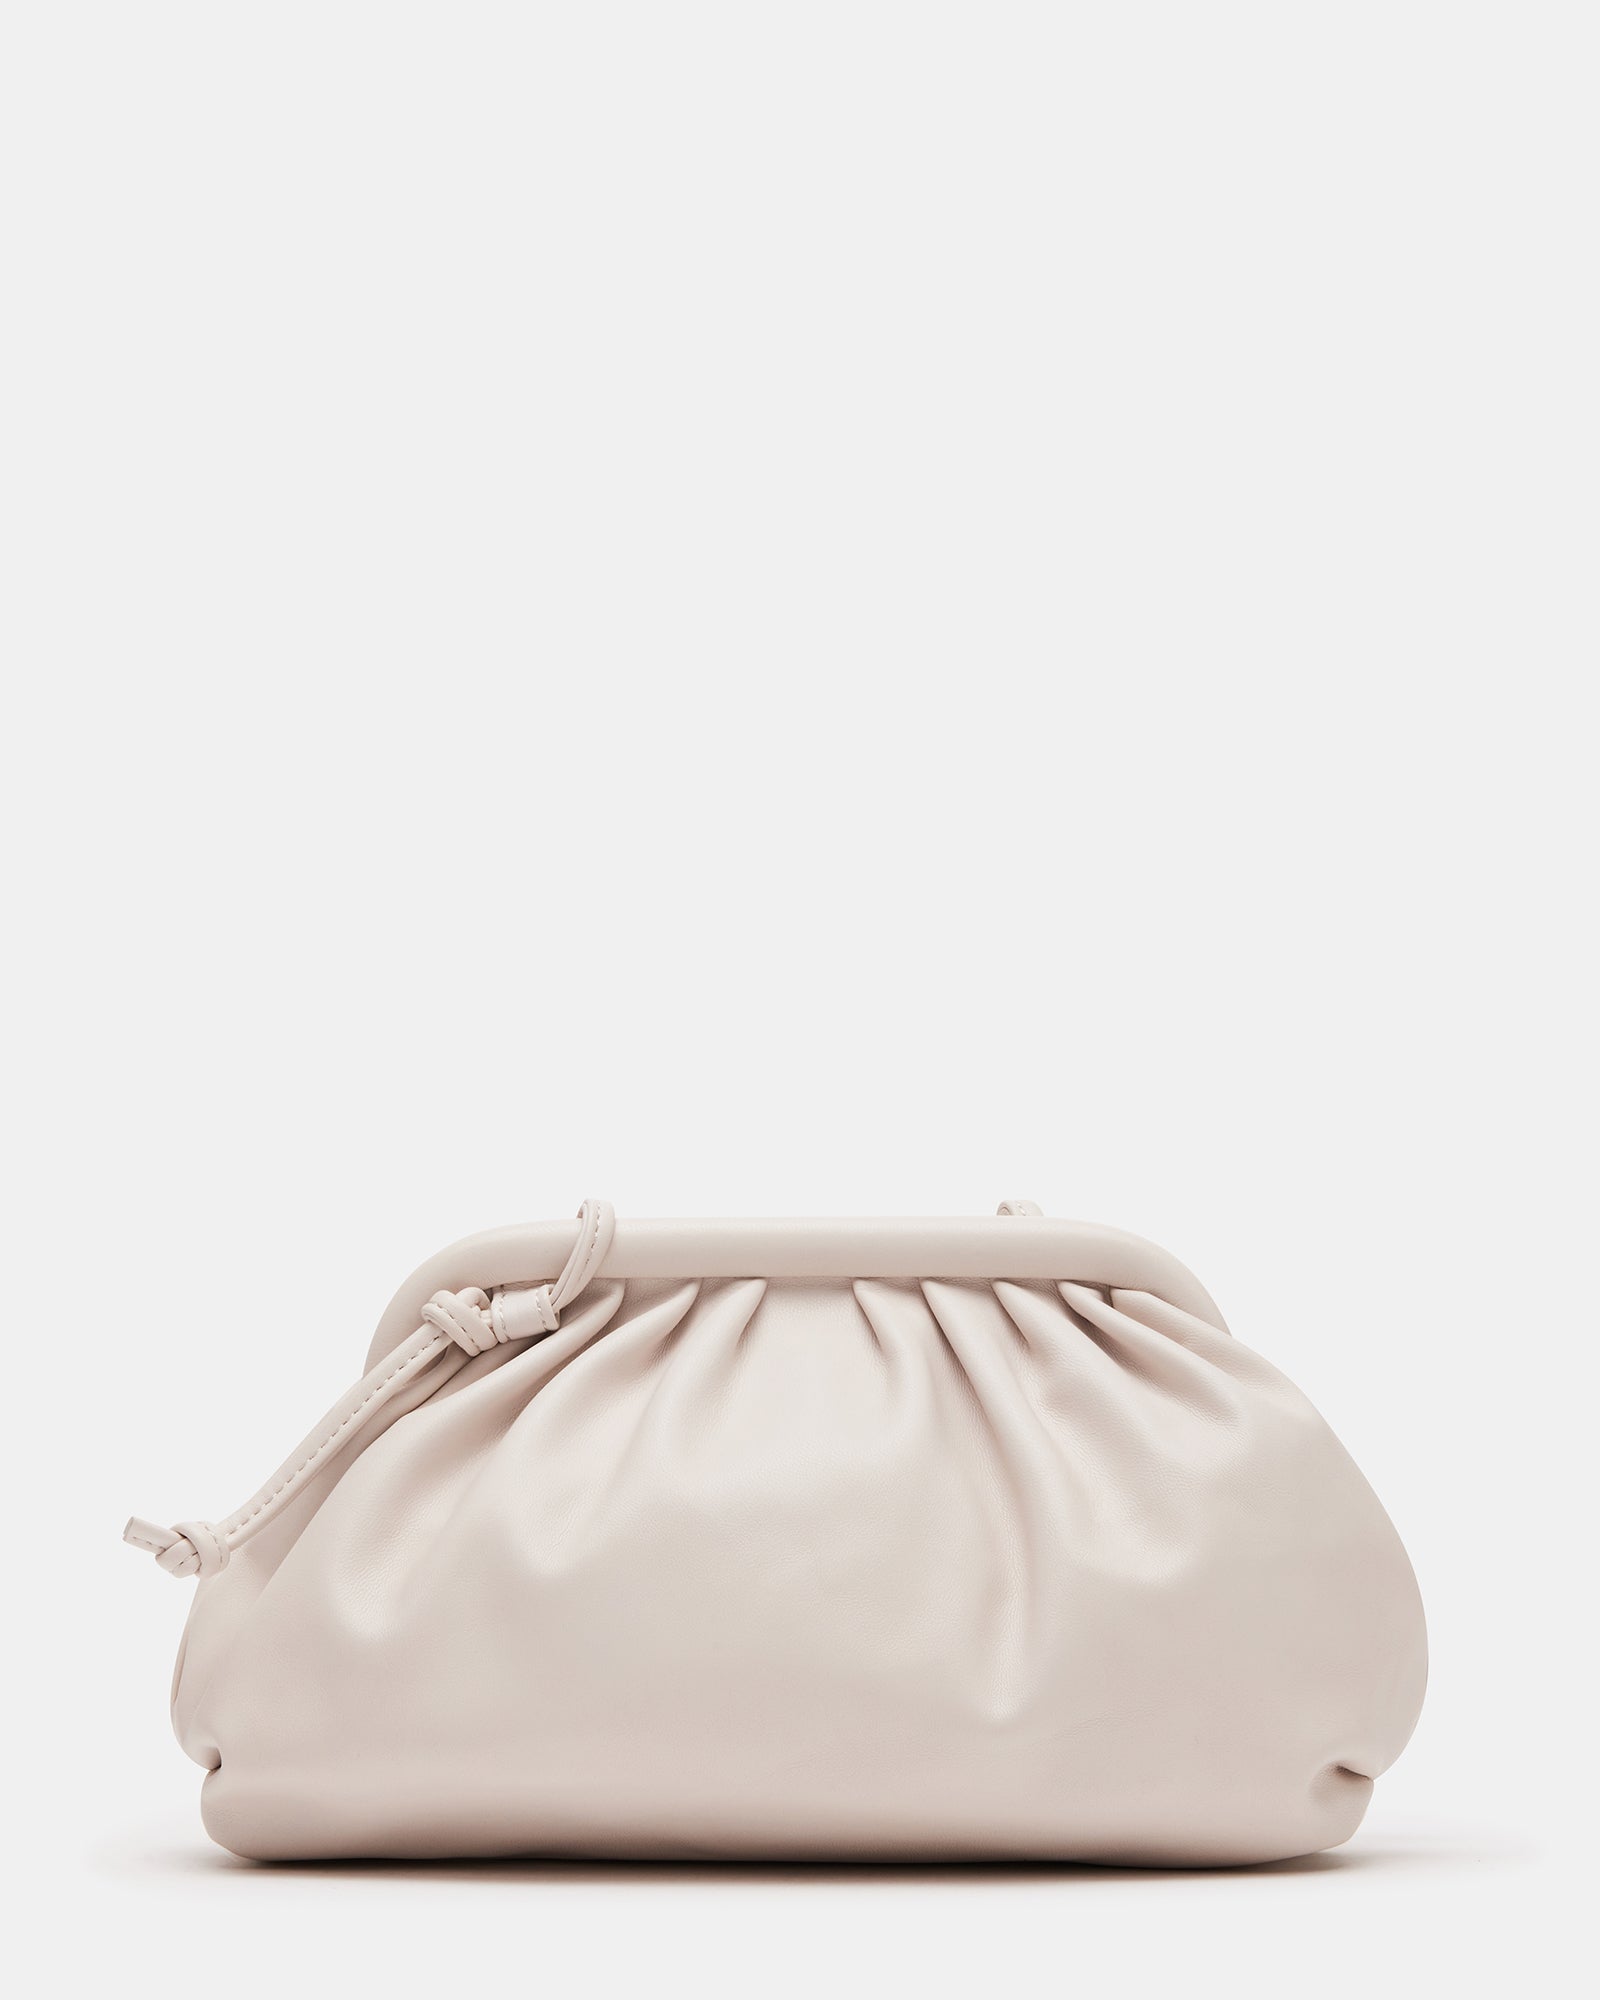 Steve Madden Britta Chevron Quilt Shoulder Bag, Grey, One Size : Amazon.in:  Fashion